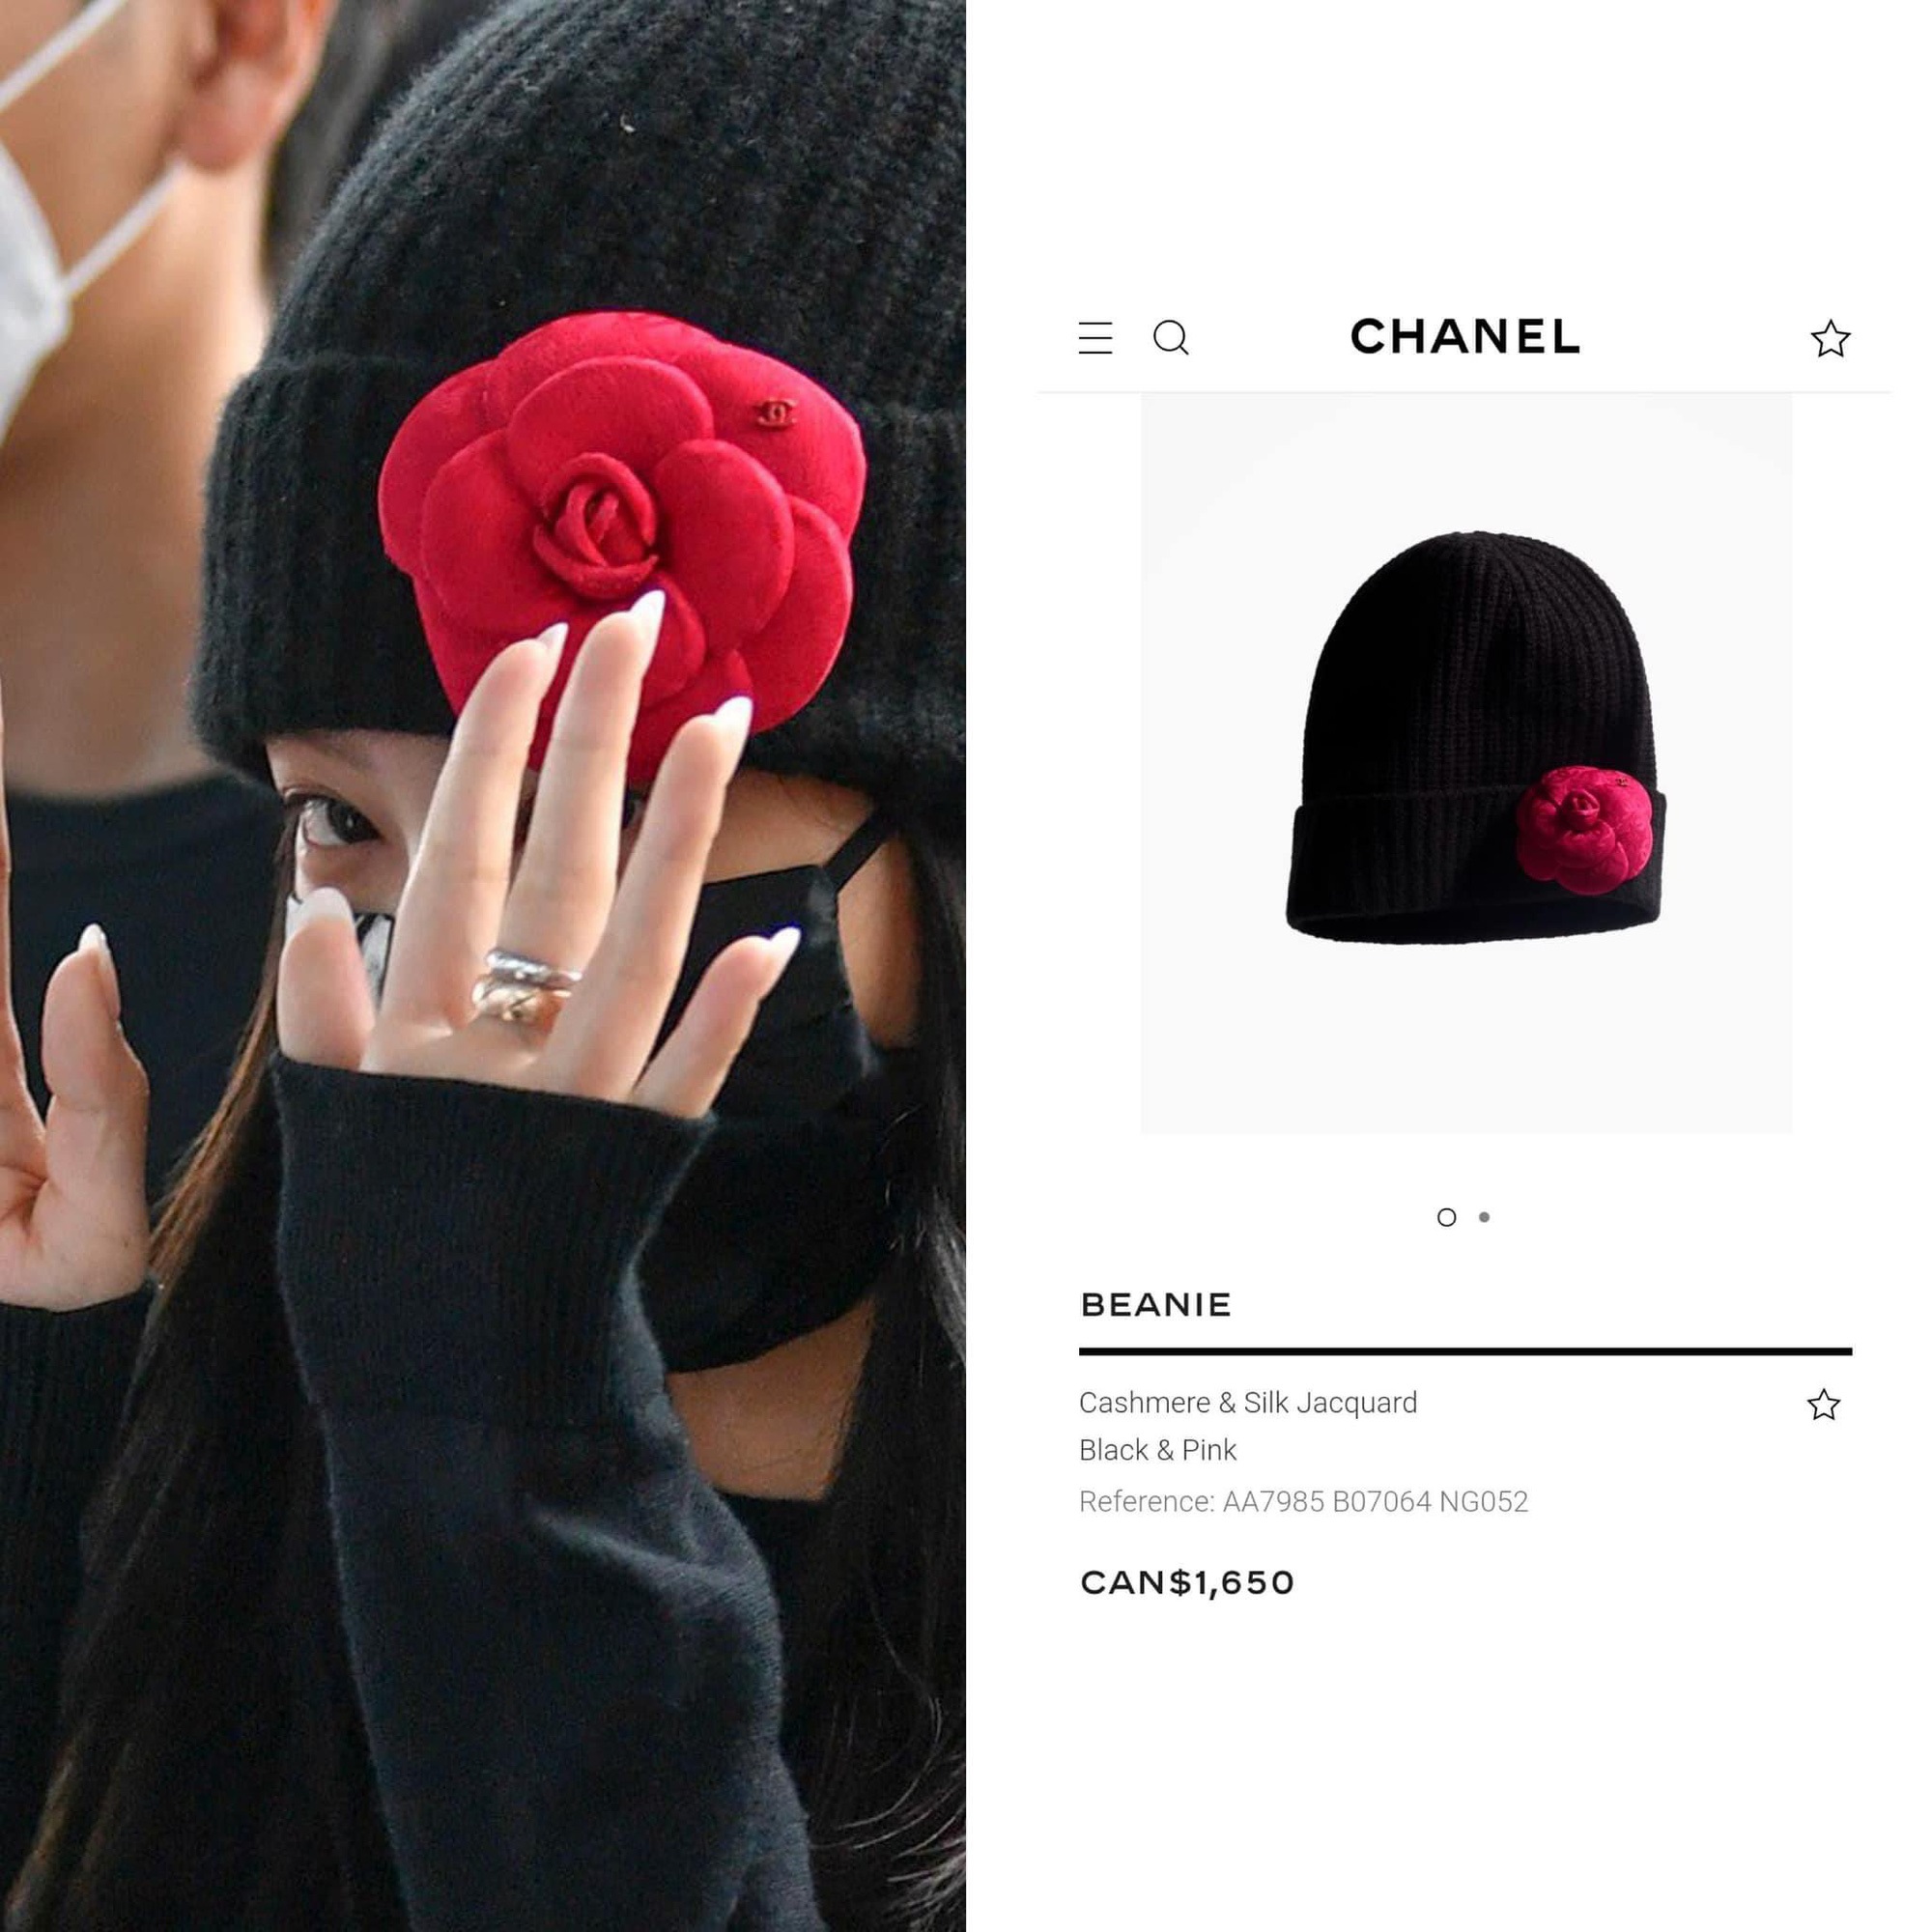 Jennie lên đường dự Paris Fashion Week, bông hoa đỏ cài mũ trông như 'lạc lối' ở đâu ra - Ảnh 4